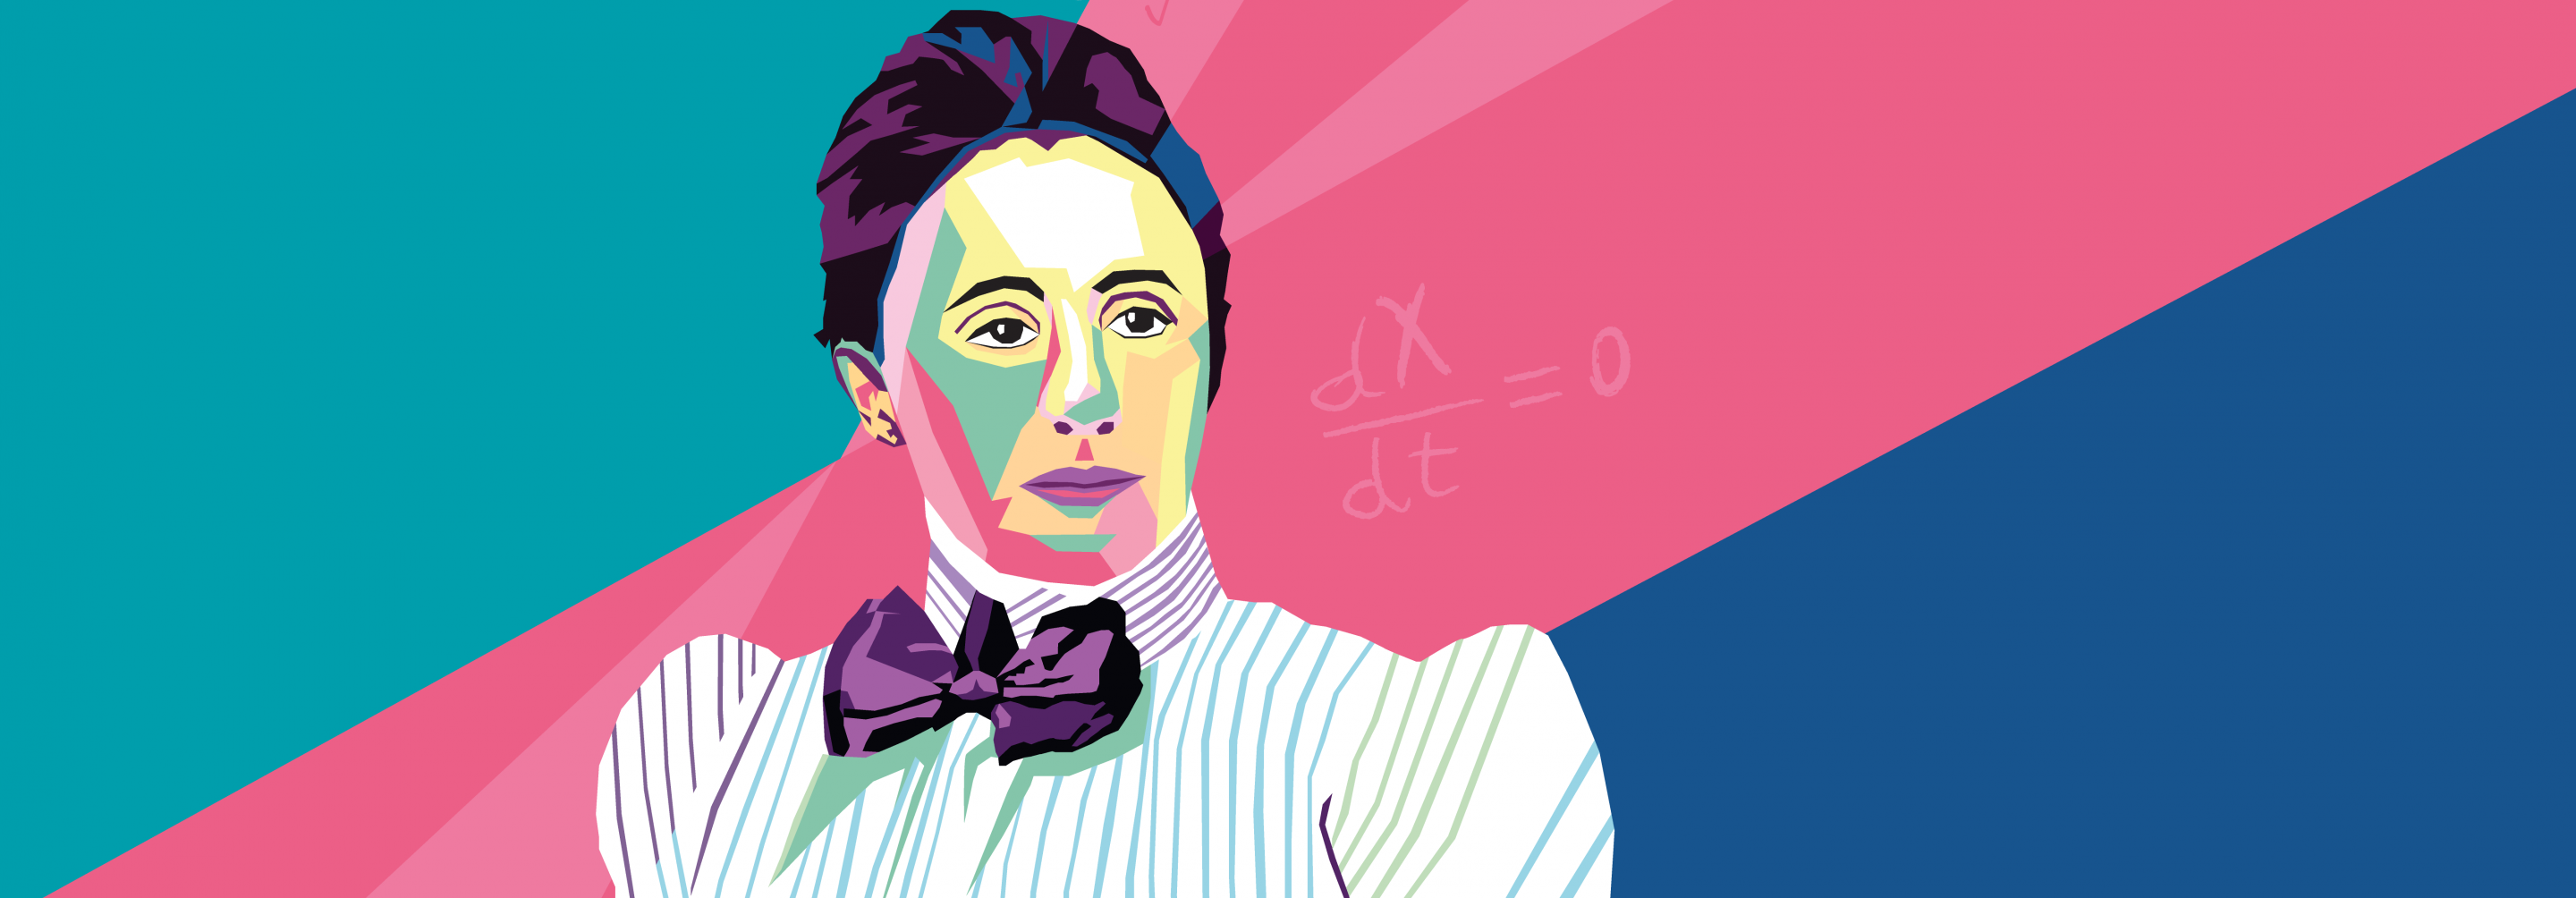 Illustration of Emmy Noether